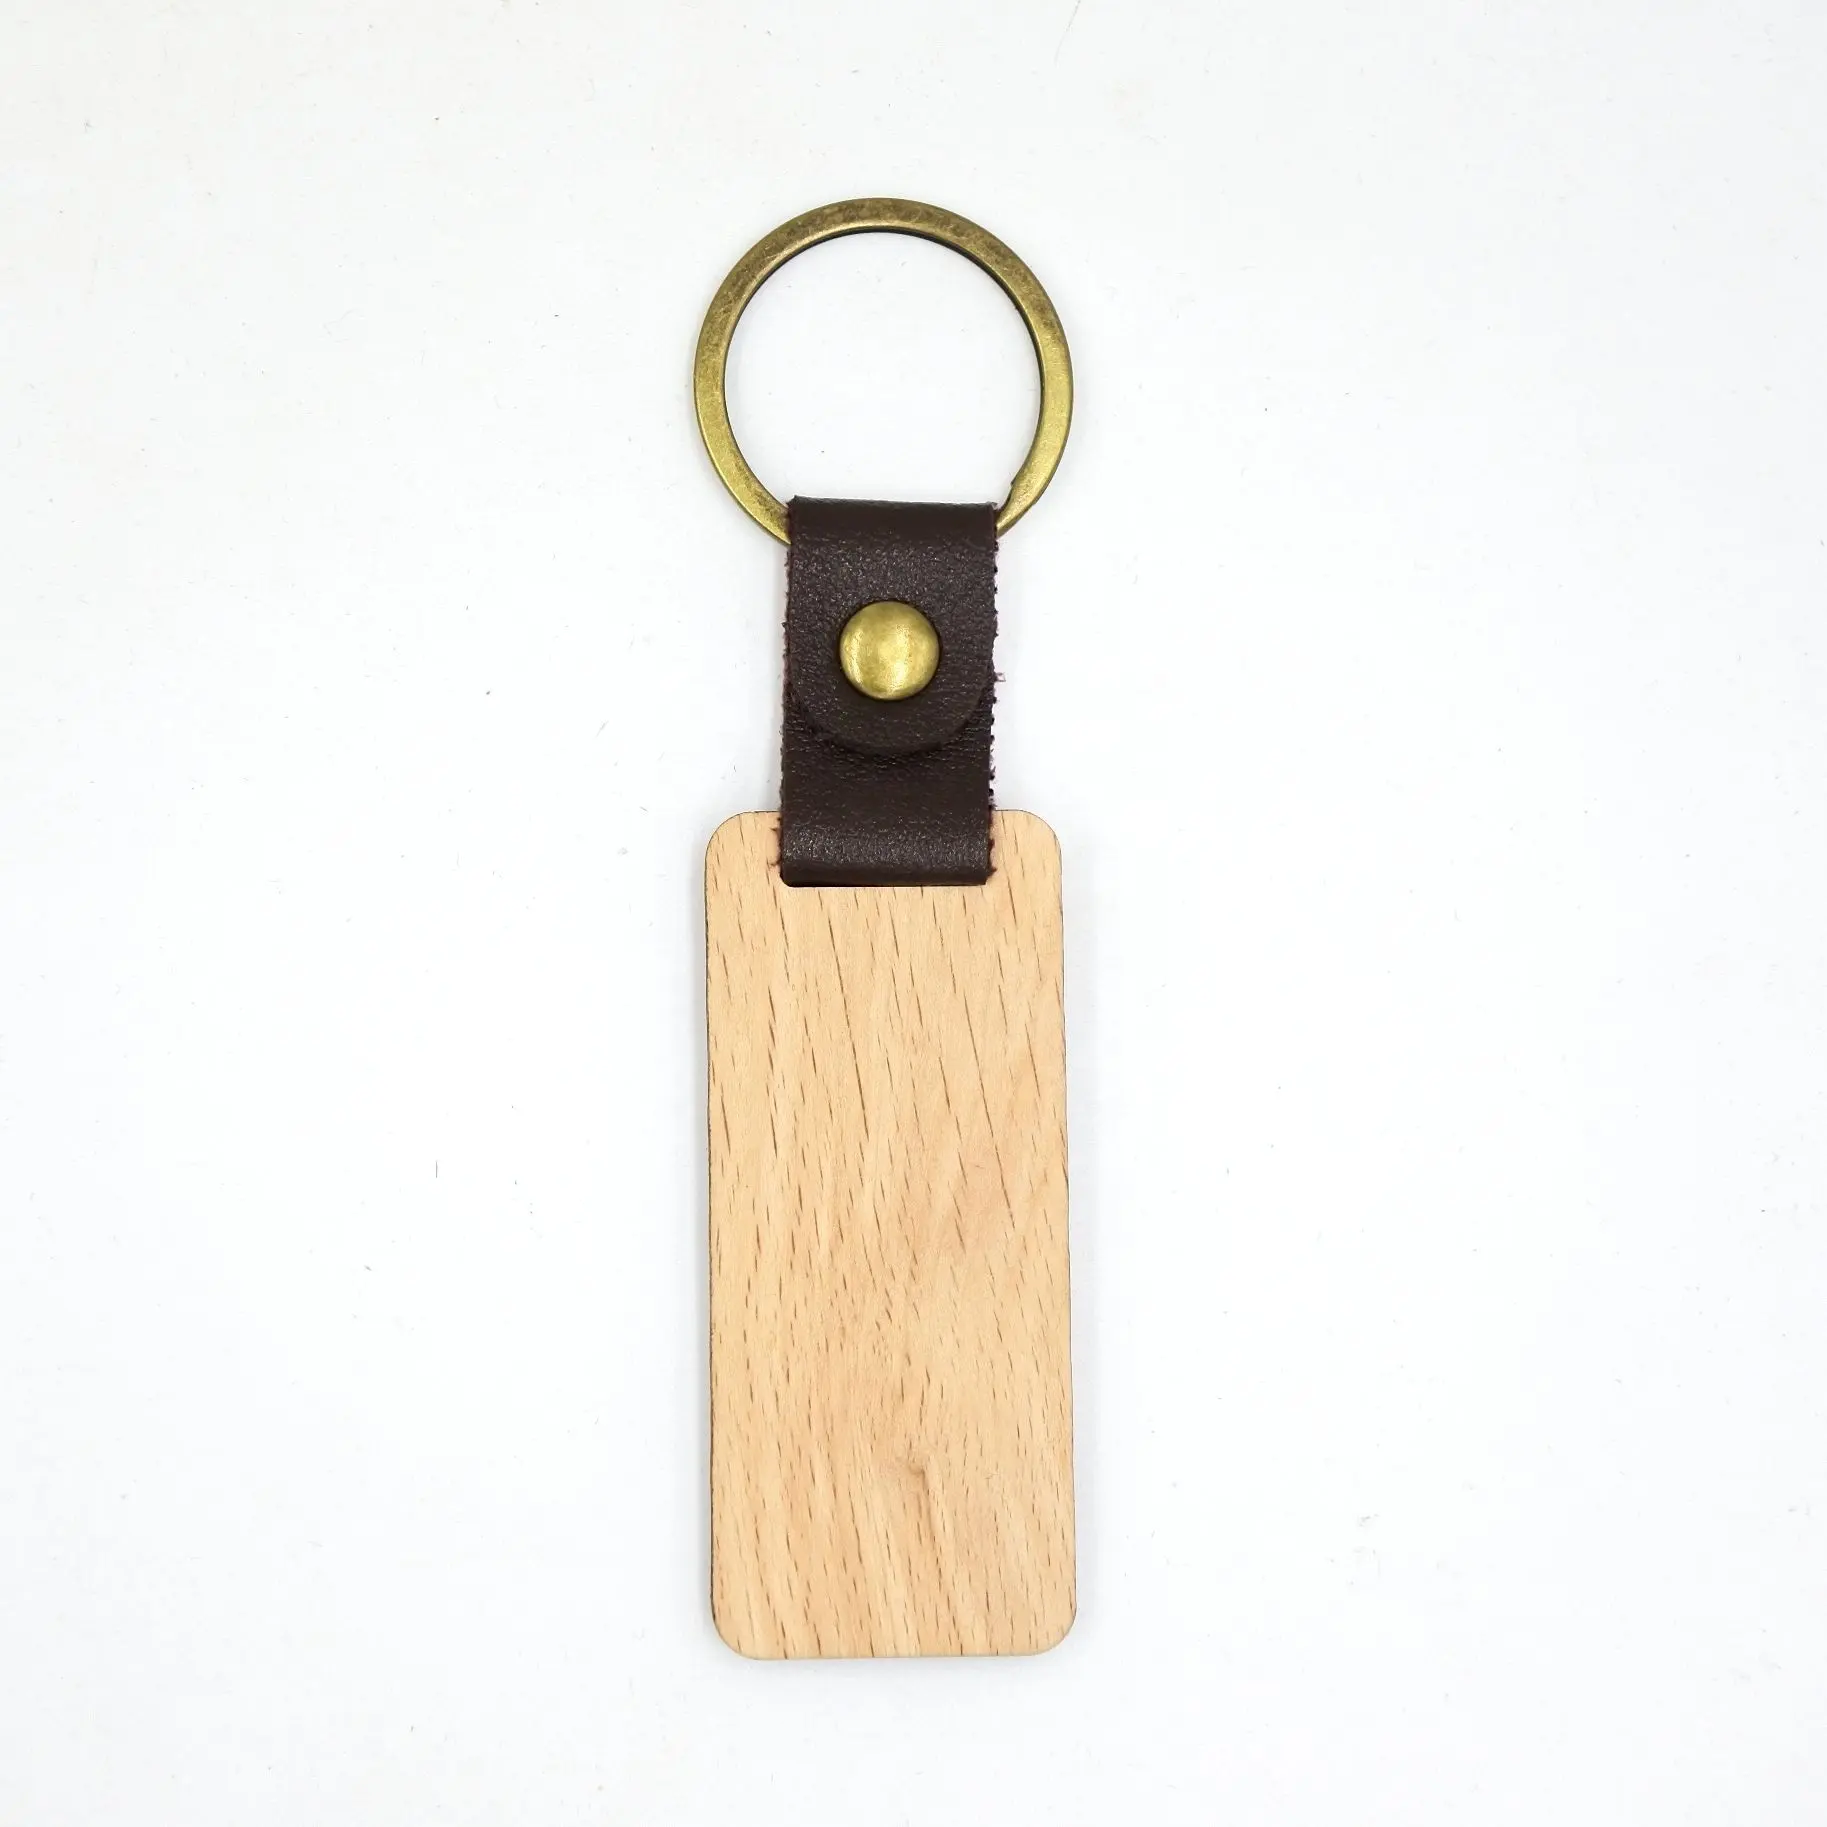 Portachiavi in legno progettato su misura con Logo inciso a Laser portachiavi in legno bianco